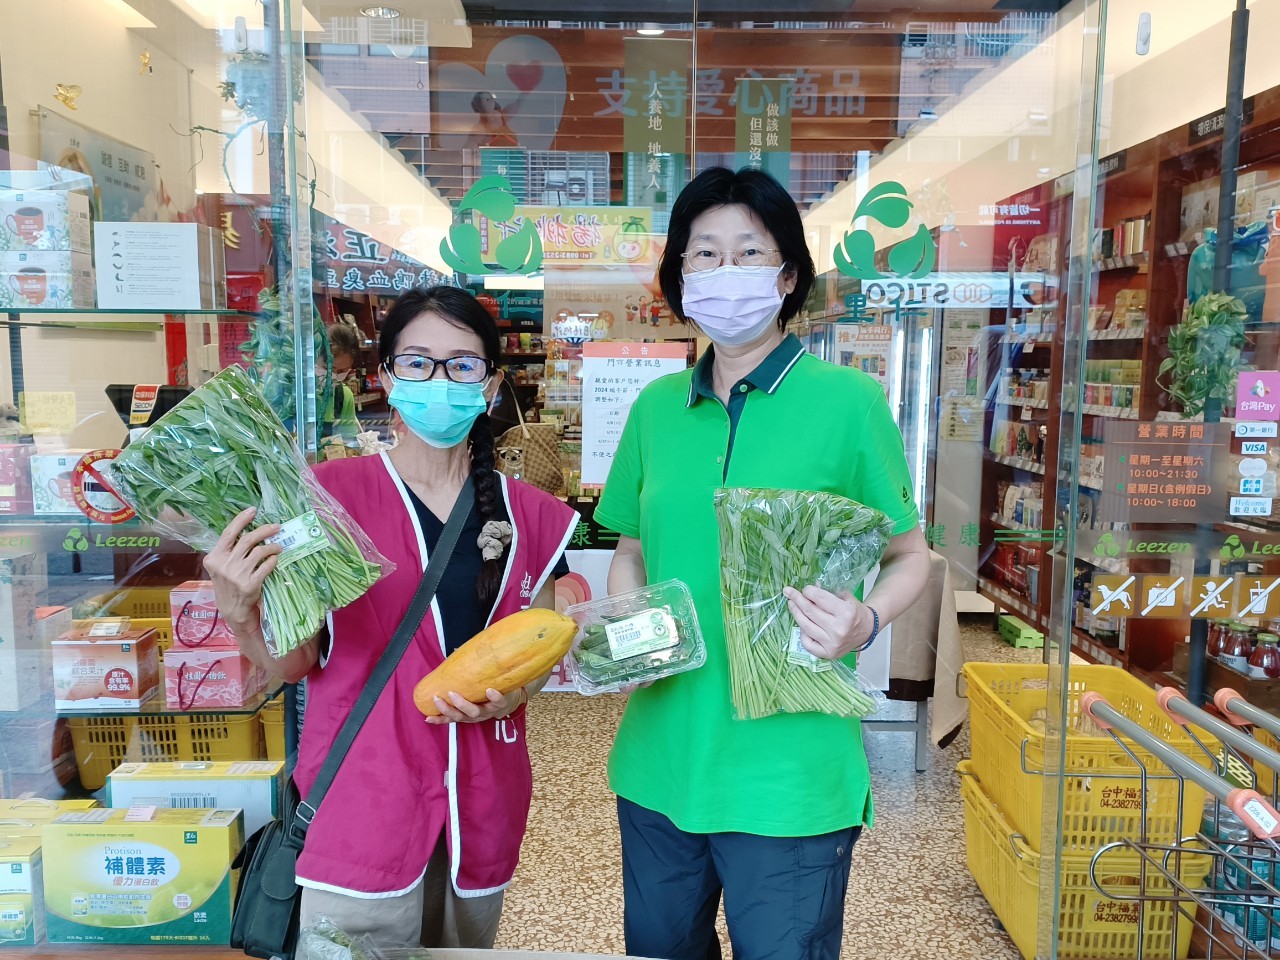 感謝 里仁超市 台中忠明店、里仁超市 台中大里益民店 捐贈有機蔬果